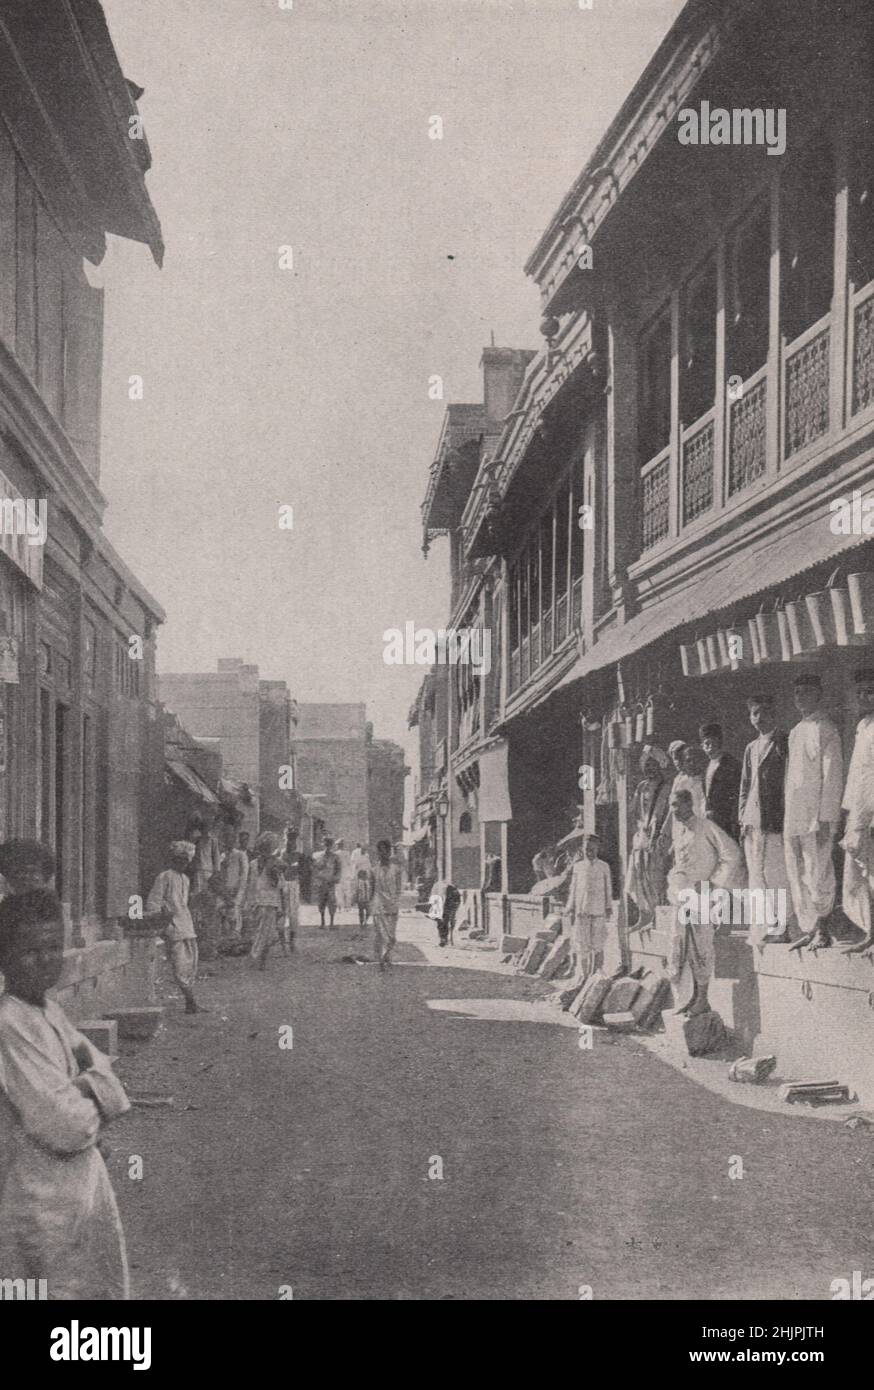 Comodidades de la vida moderna en Sangamner. India. Bombay y Gujarat (1923) Foto de stock